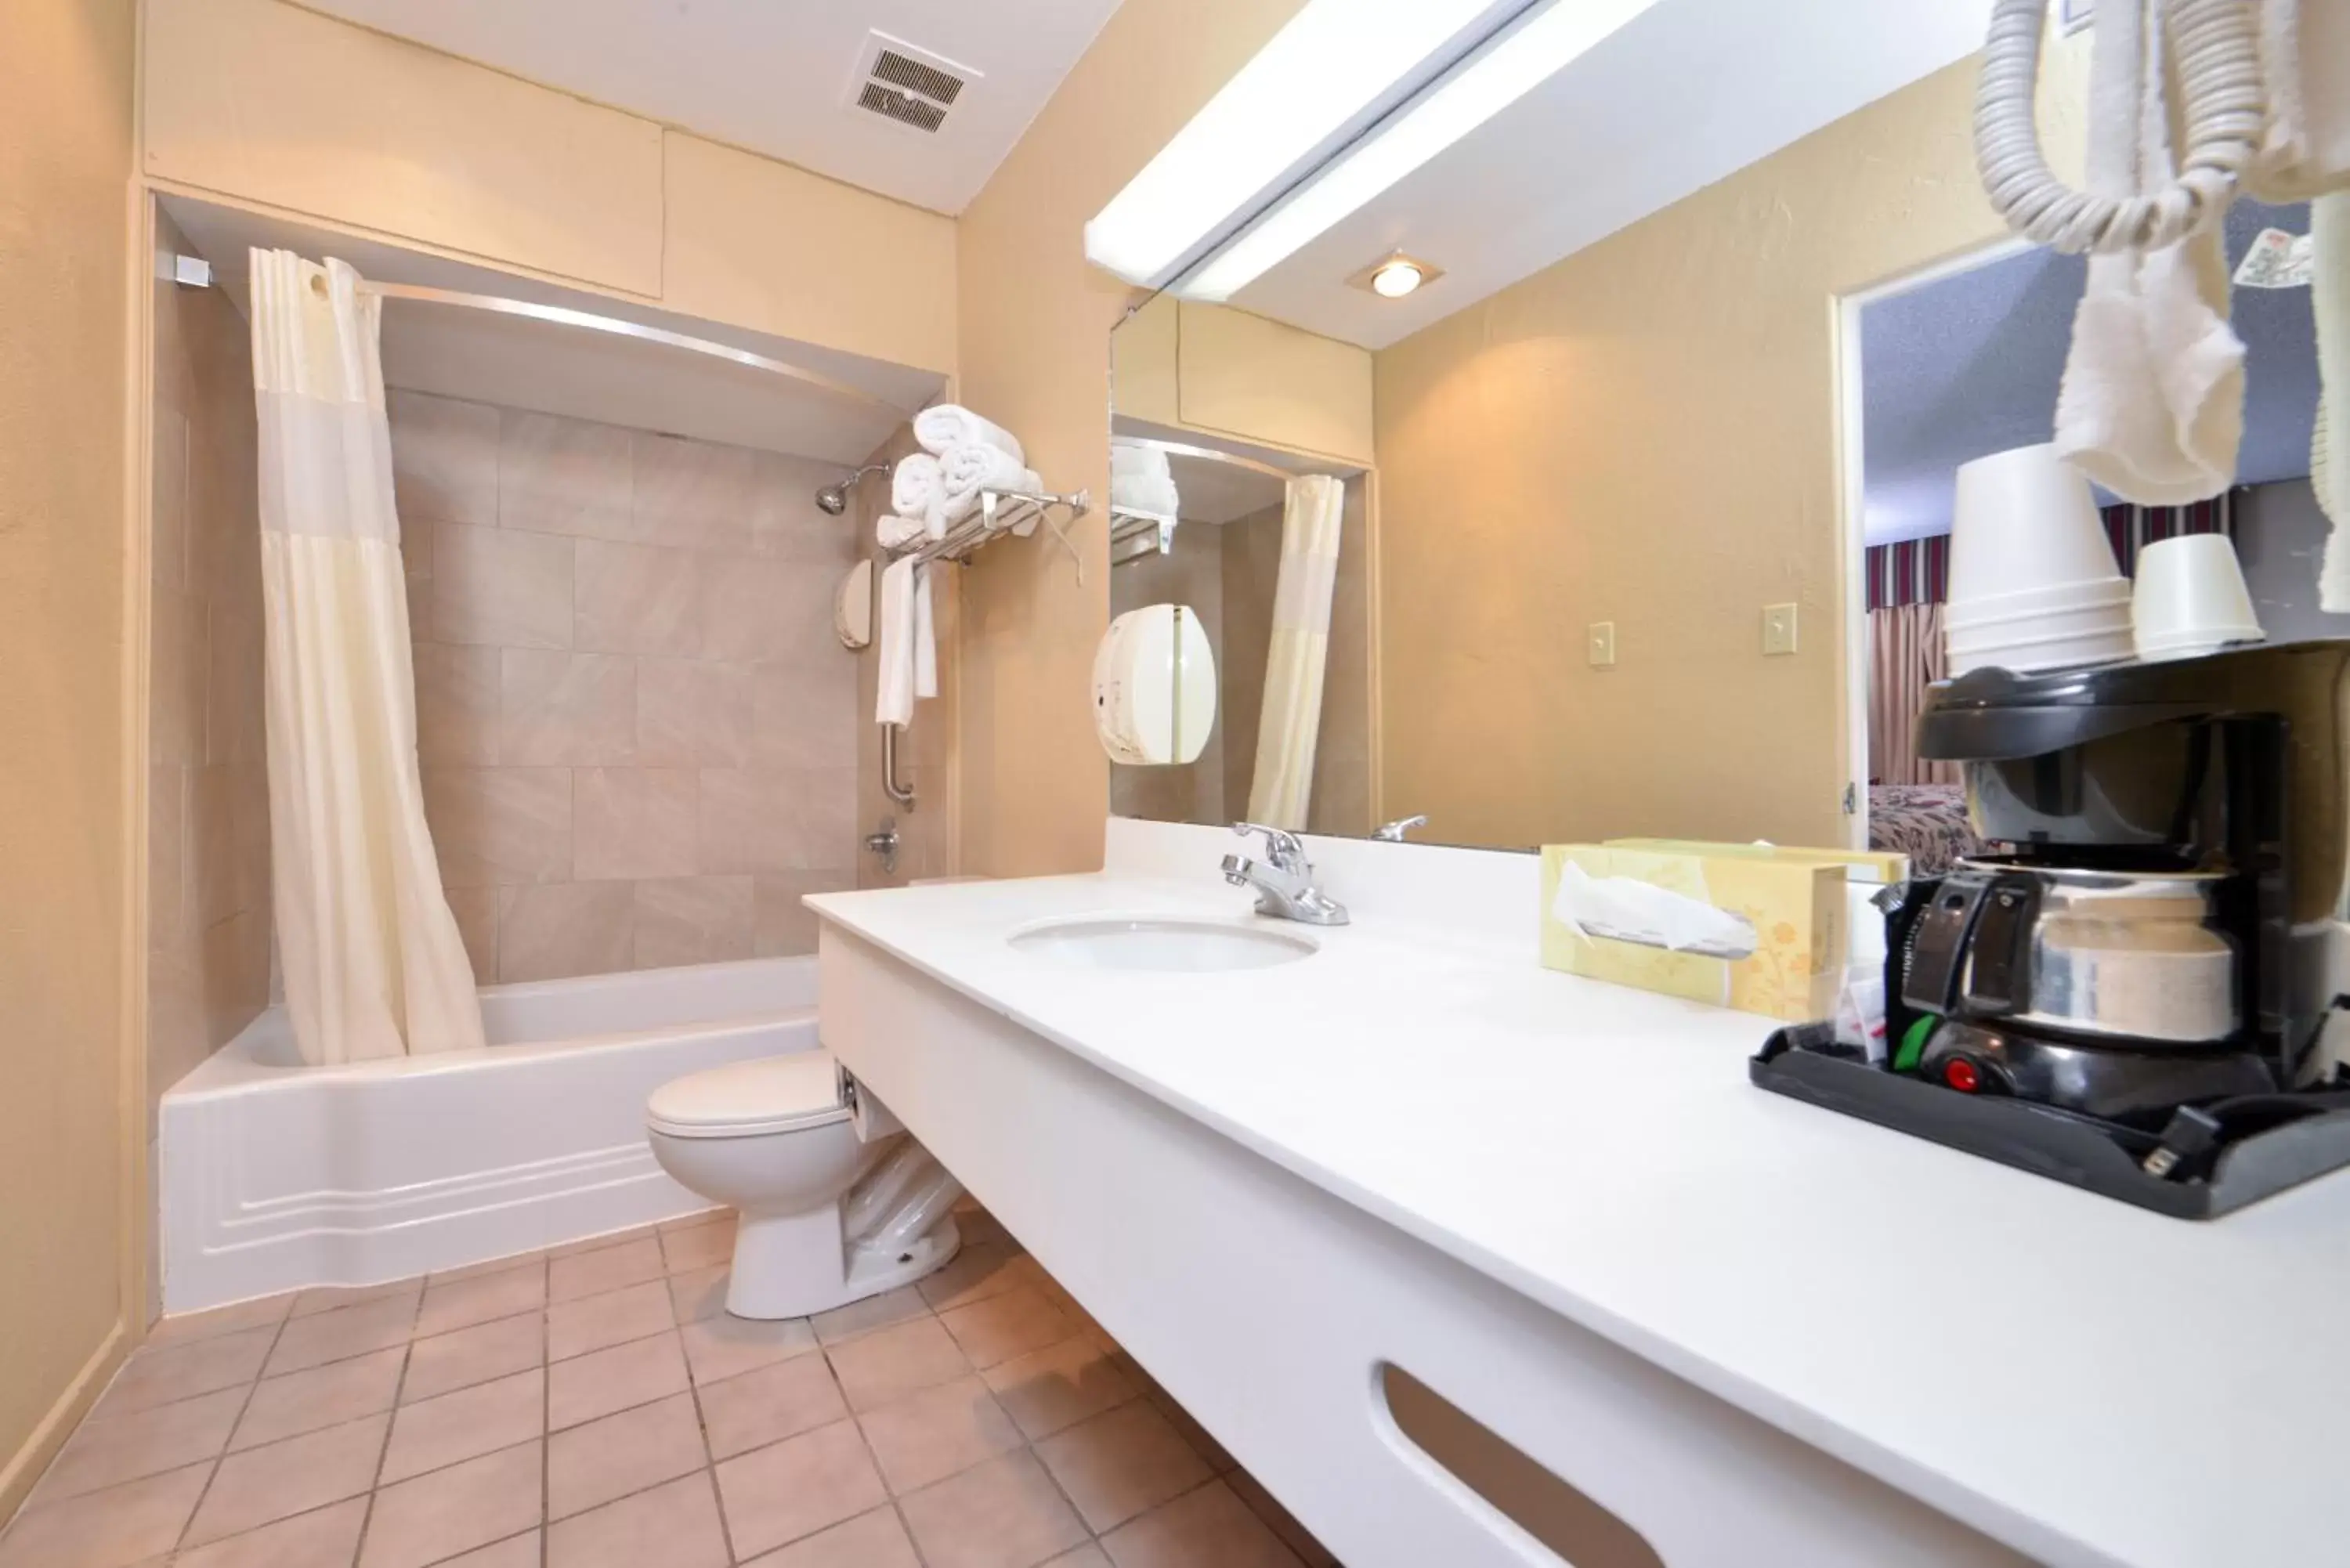 Bedroom, Bathroom in Americas Best Value Inn Lubbock East